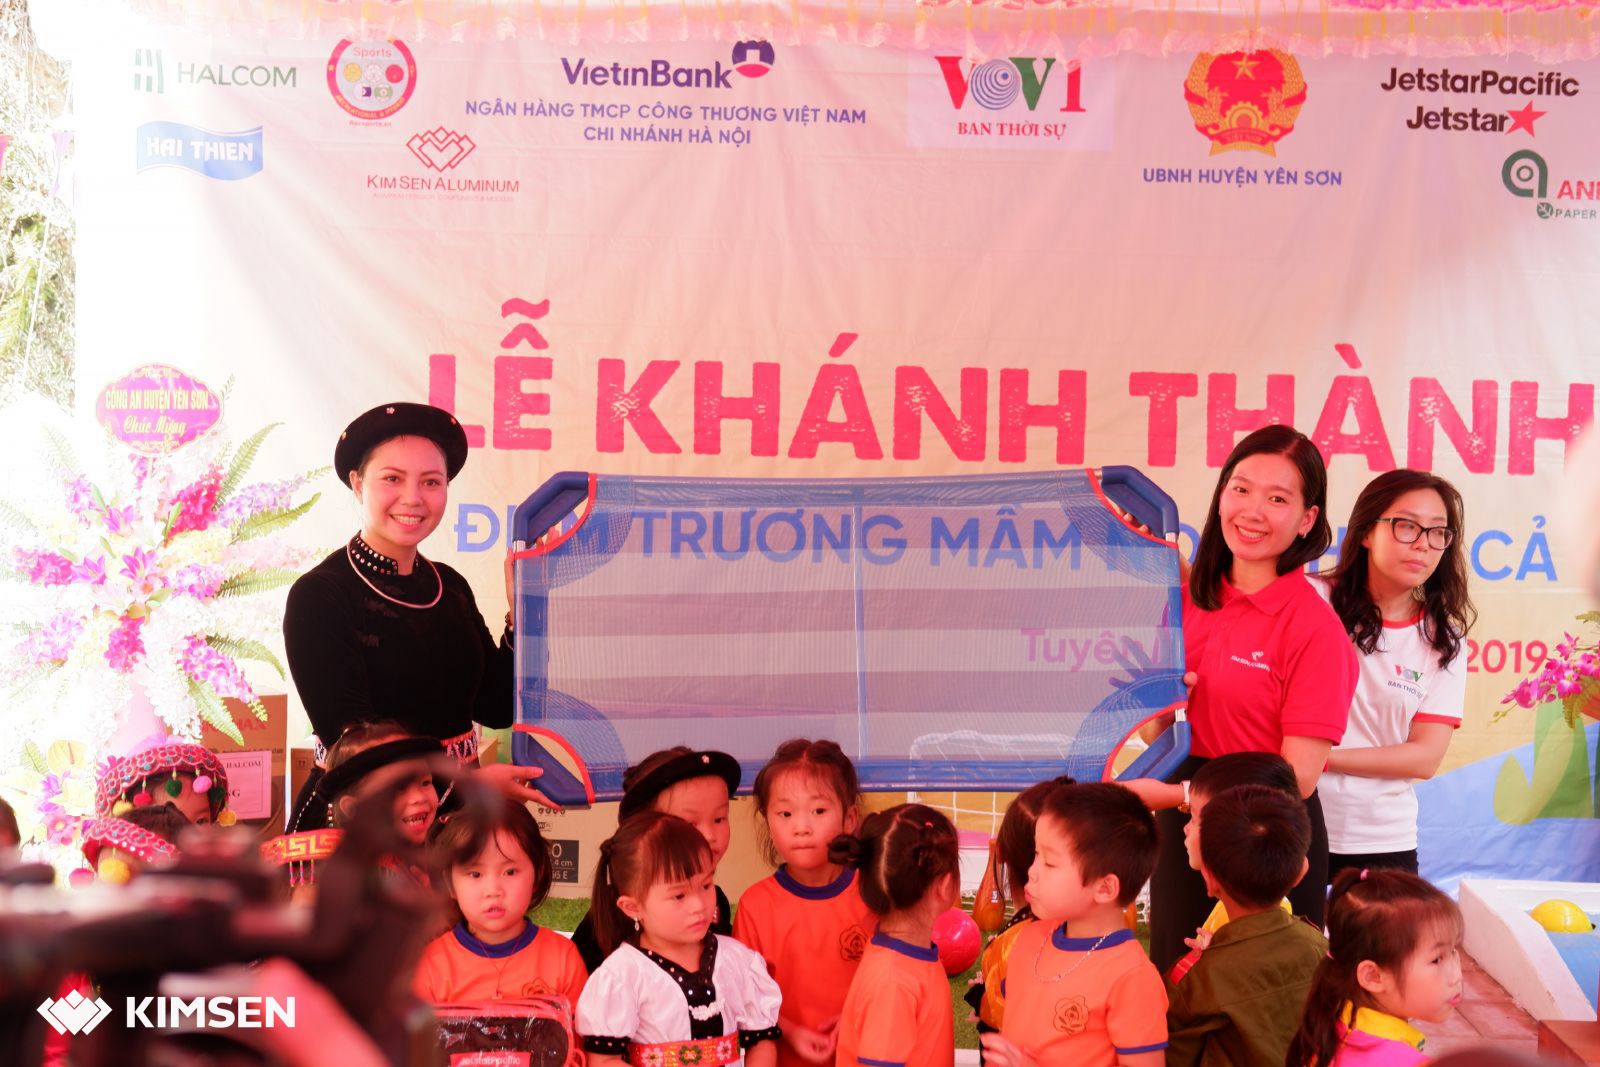 KIMSEN chung tay vì cộng đồng: Khánh thành trường mần non thôn Cả, tỉnh Tuyên Quang